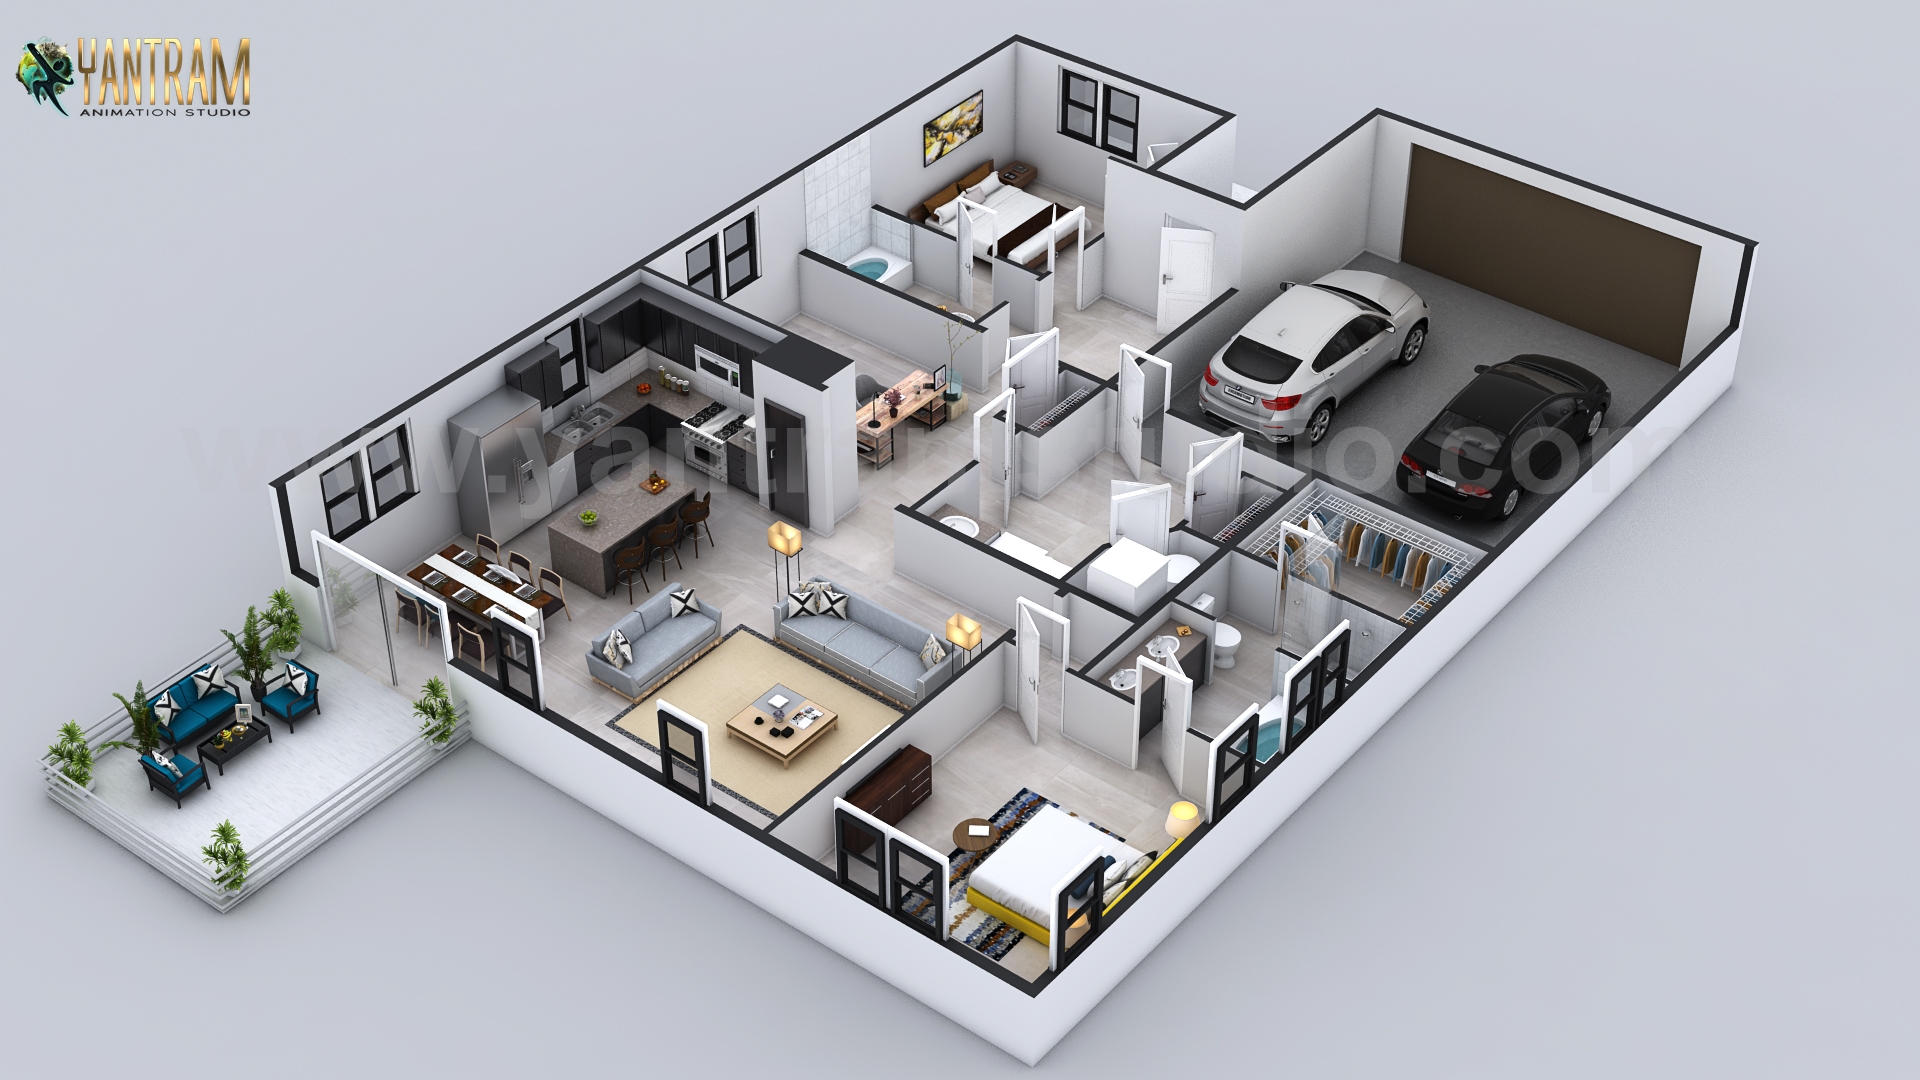 3d-residential-floor-plan-design-with-garage-slot-architectural-animation-studio.jpg -  by Yantramarchitecturaldesignstudio